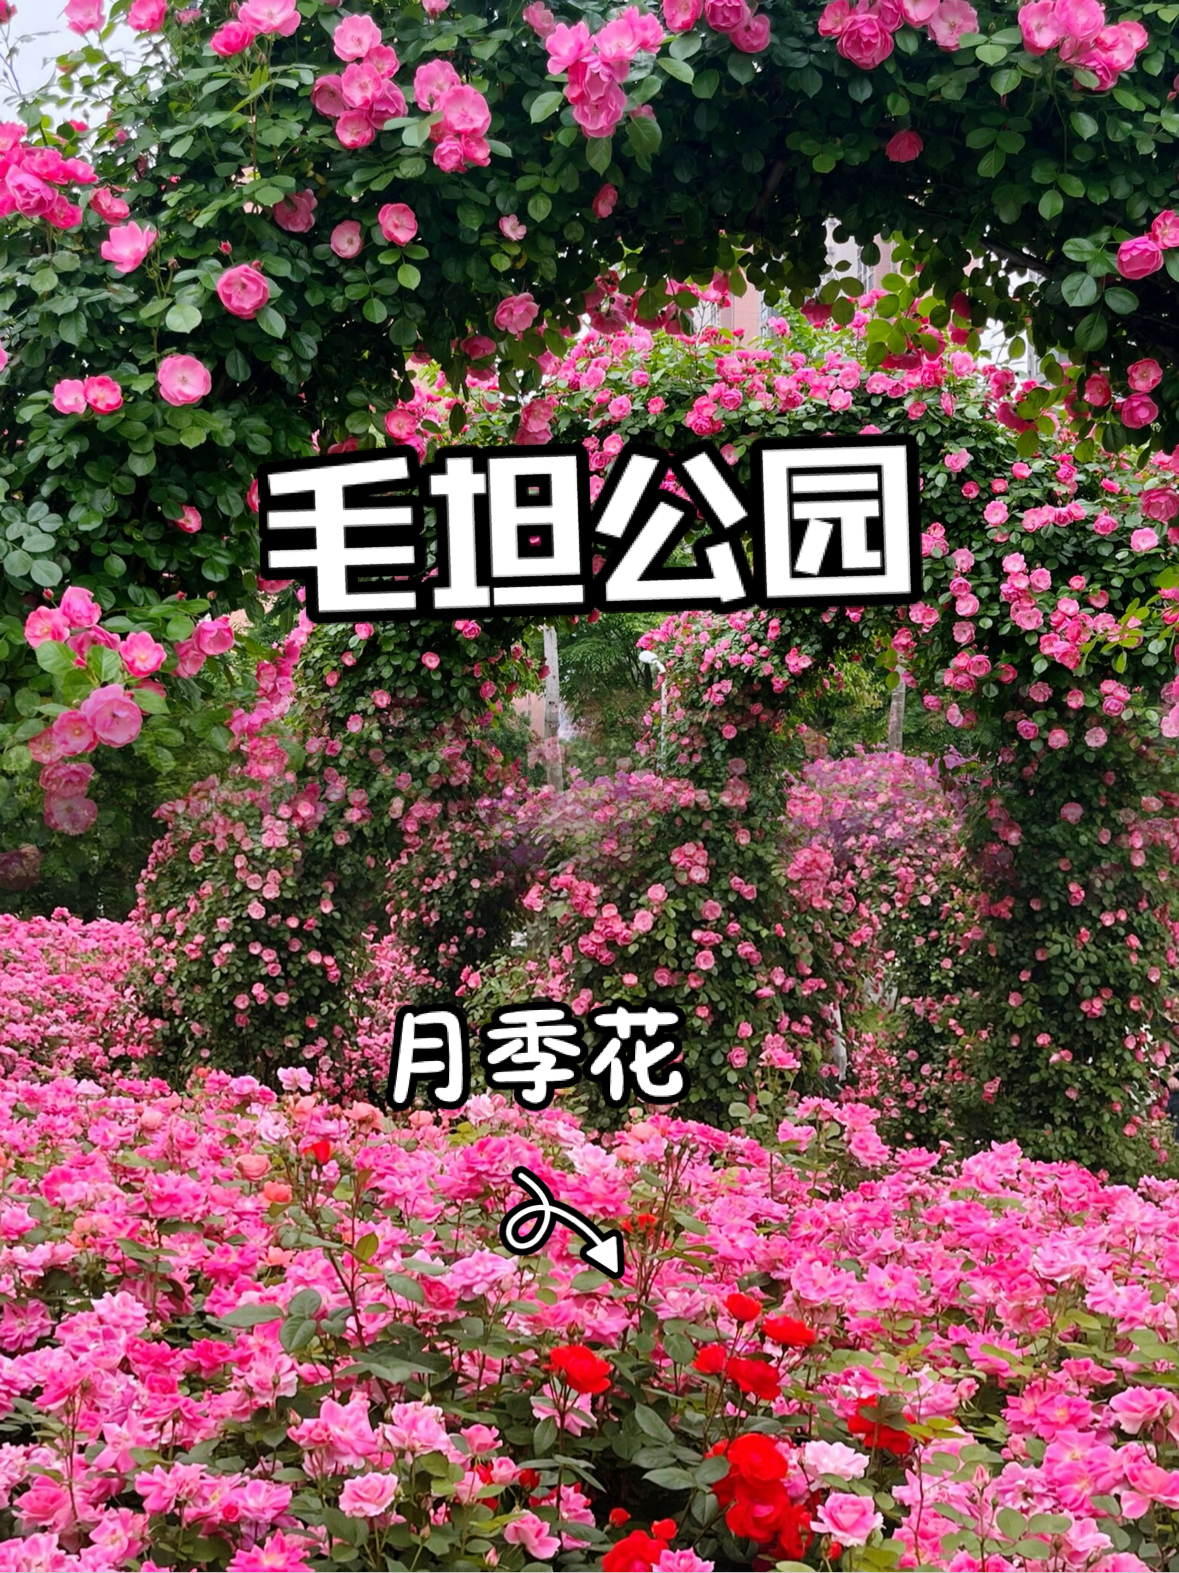 武汉月季拍照圣地，千人知道的花墙好浪漫啊～原图直出😍😍